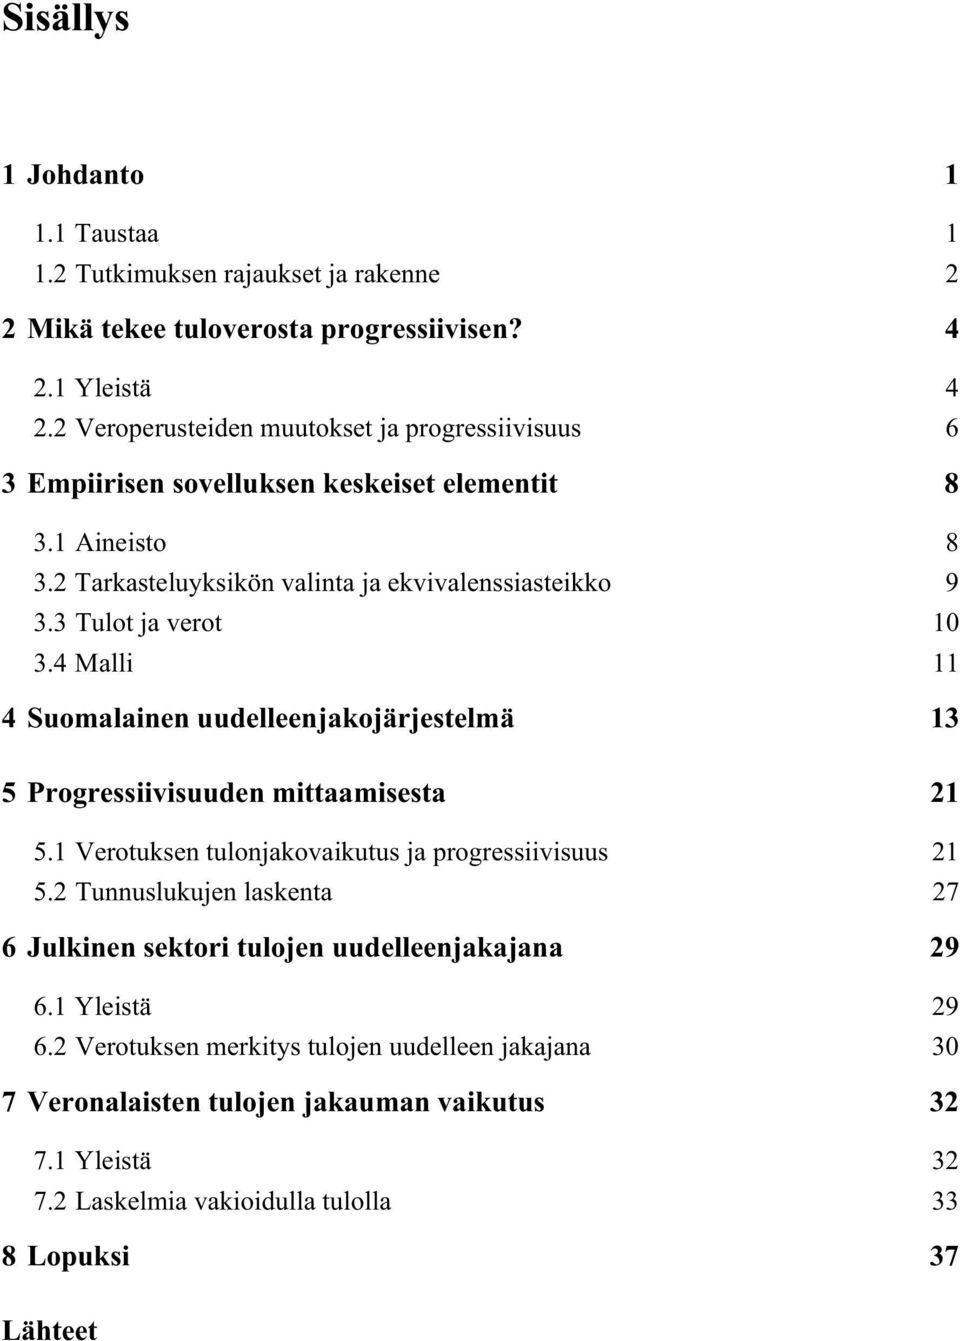 3 Tulot ja verot 10 3.4 Malli 11 4 Suomalainen uudelleenjakojärjestelmä 13 5 Progressiivisuuden mittaamisesta 21 5.1 Verotuksen tulonjakovaikutus ja progressiivisuus 21 5.